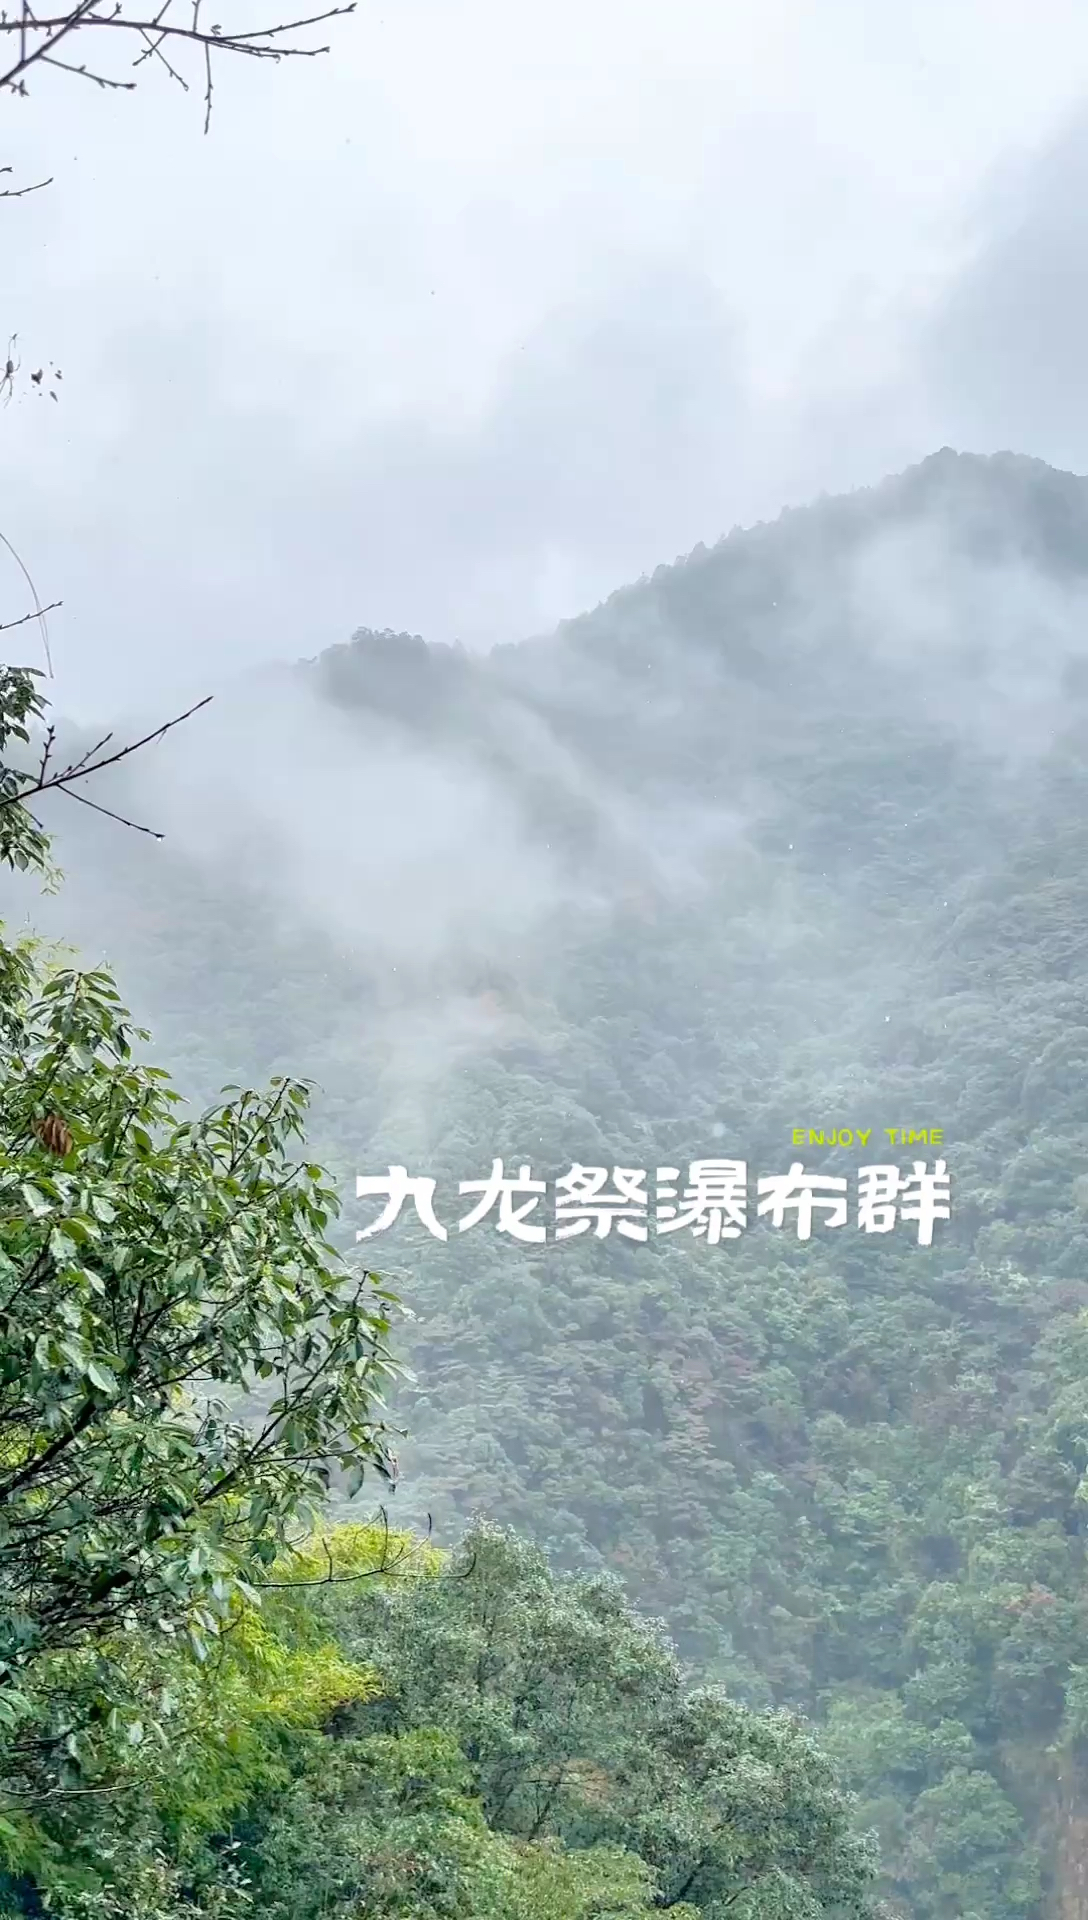 福建入围《中国国家地理杂志》最美瀑布—九龙祭瀑布群，九龙祭瀑布群由九级瀑布组成，在长仅一公里的流程中